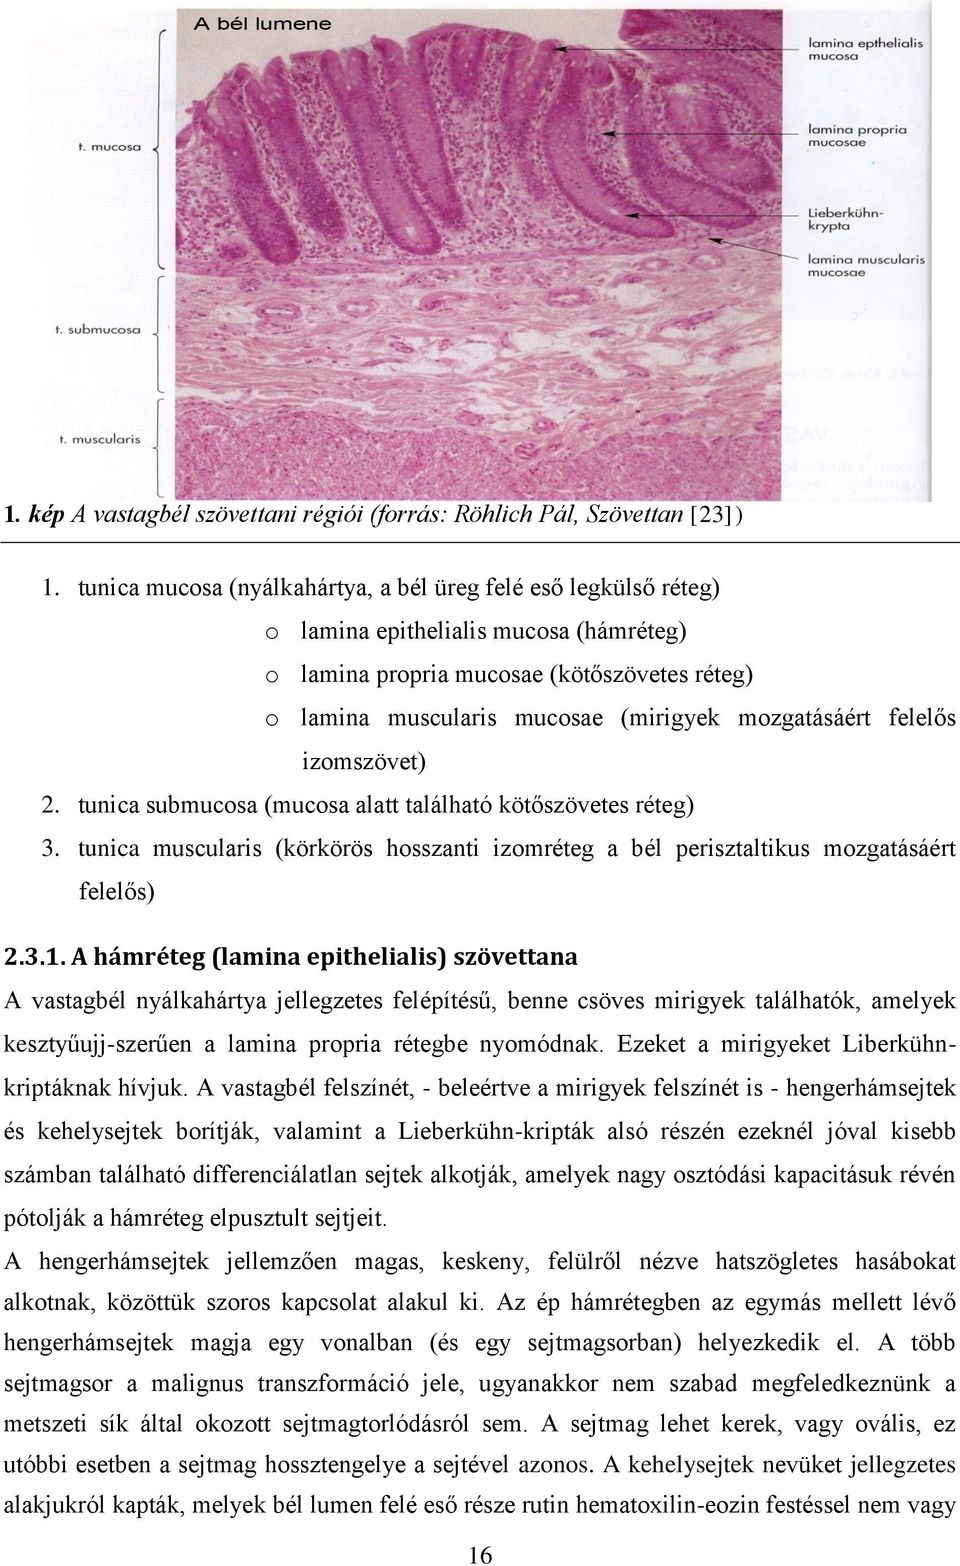 mozgatásáért felelős izomszövet) 2. tunica submucosa (mucosa alatt található kötőszövetes réteg) 3. tunica muscularis (körkörös hosszanti izomréteg a bél perisztaltikus mozgatásáért felelős) 2.3.1.